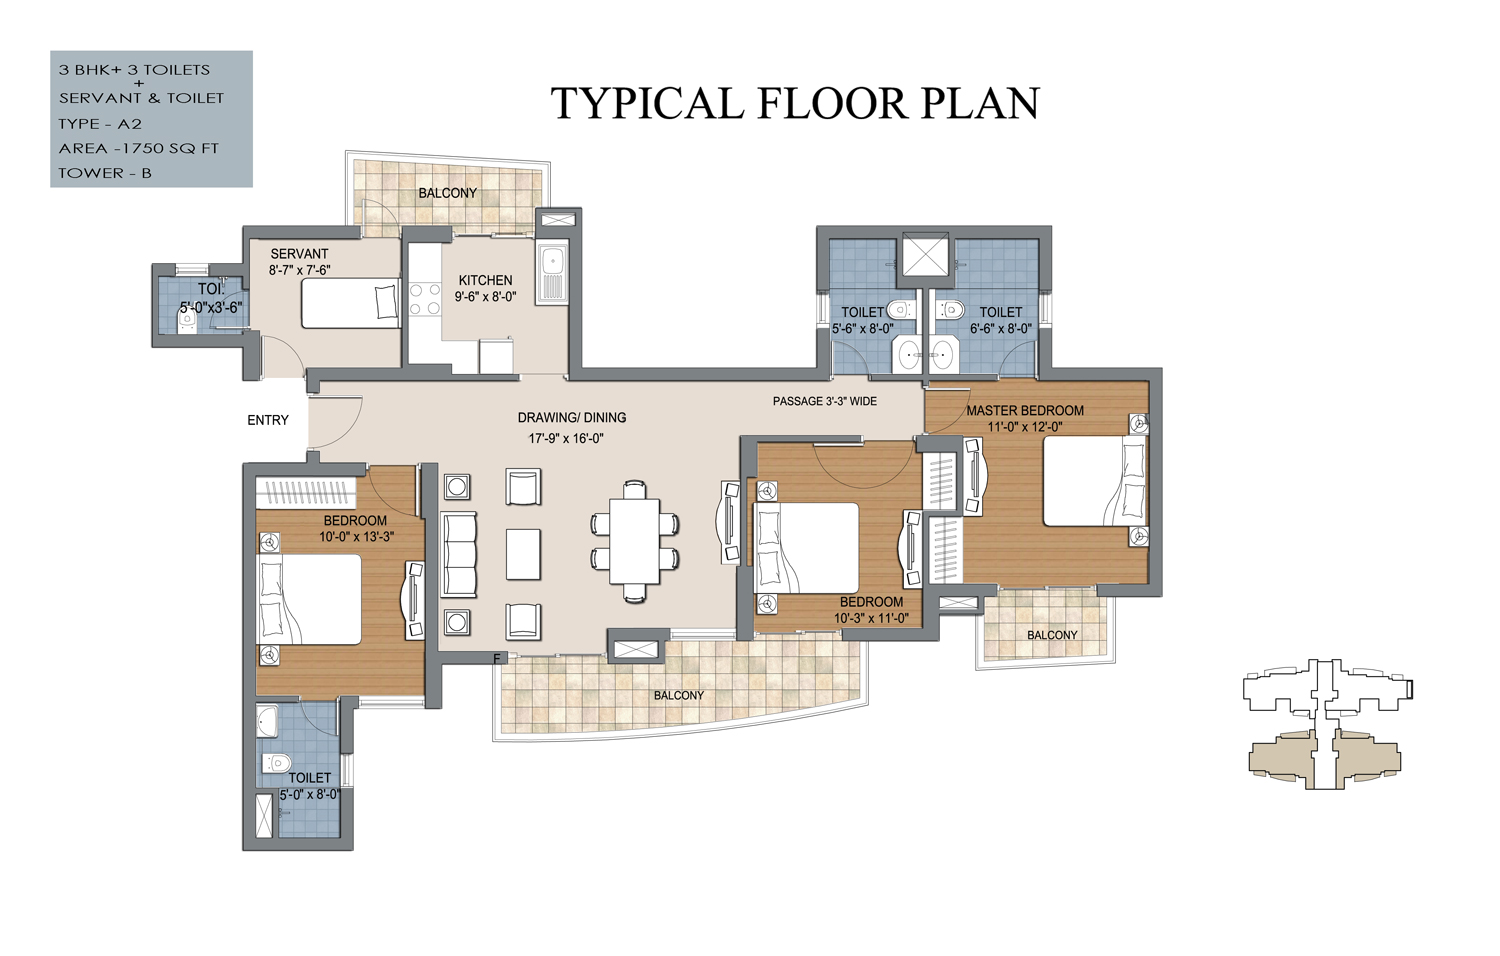 3 bhk floor plan of resort